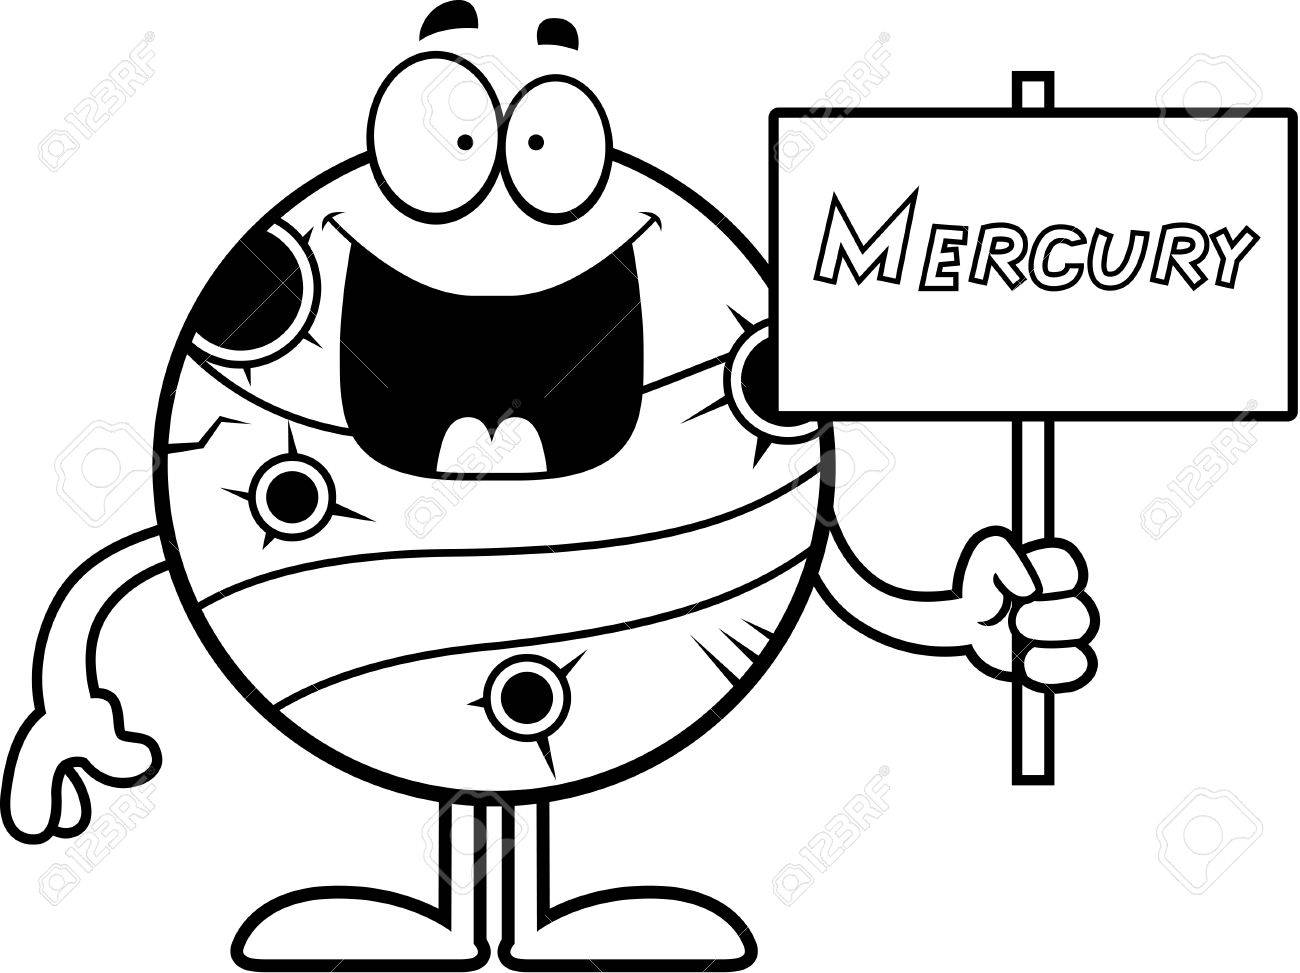 Mercury cartoon cliparts.